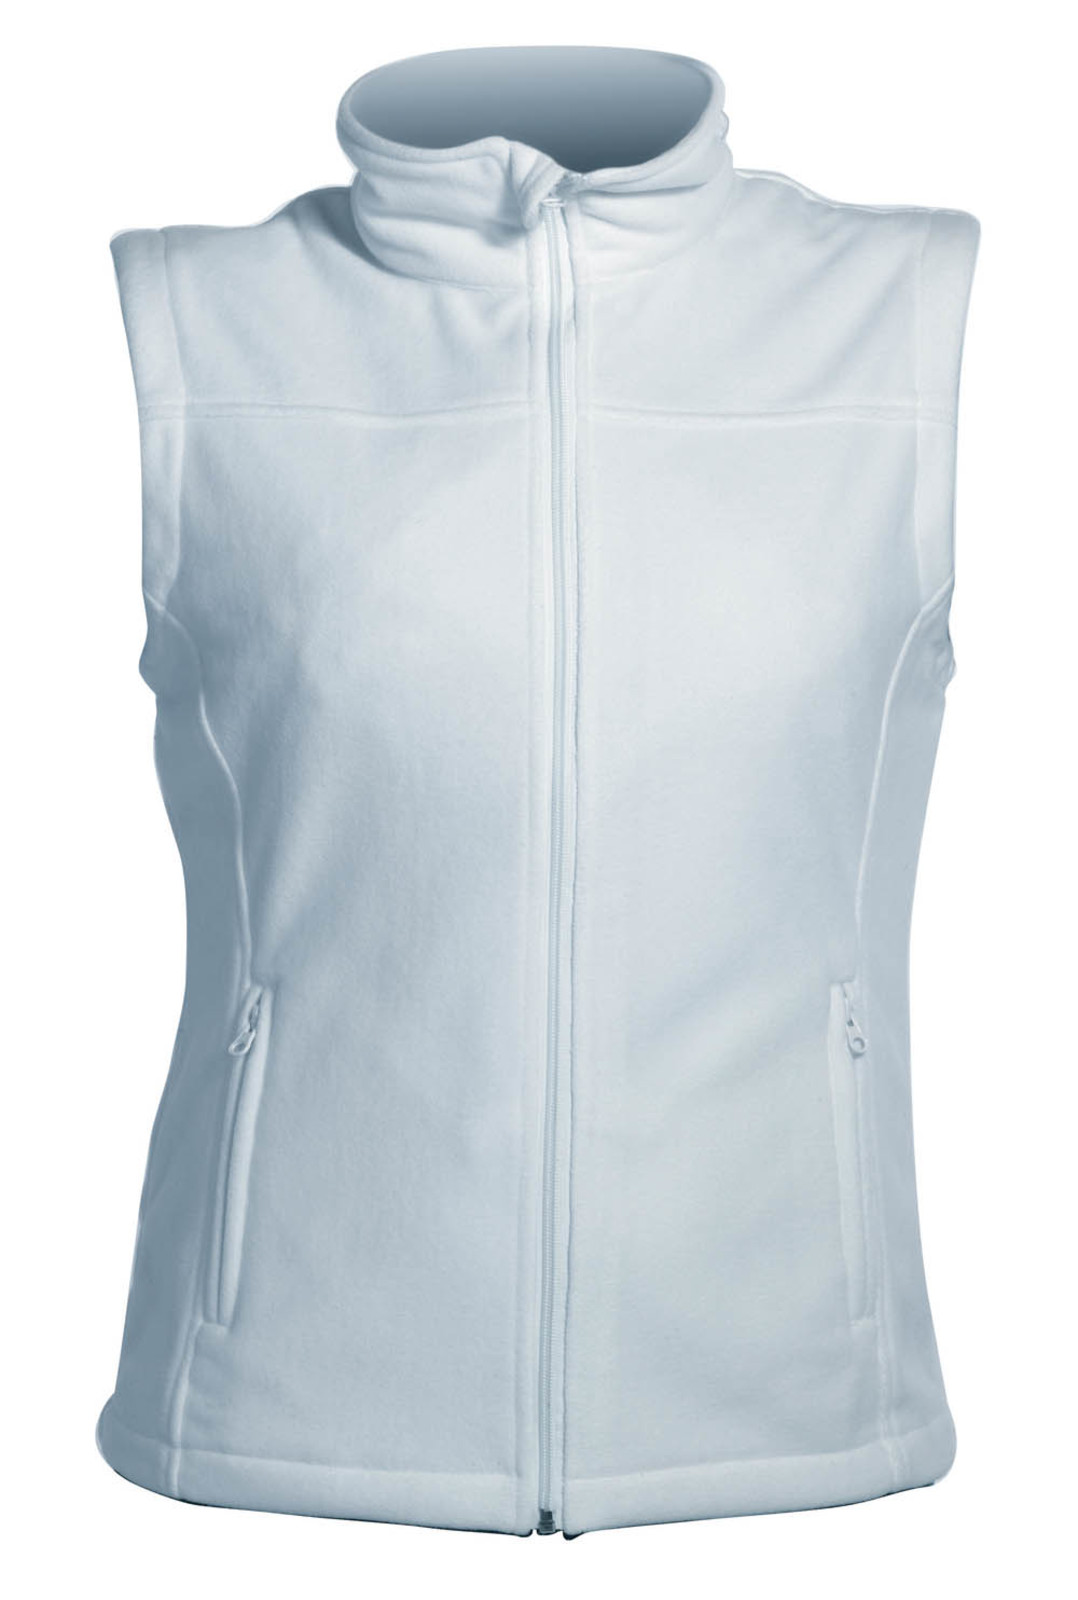 Fleece vesta Vorma Lady dámska - veľkosť: XL, farba: modrá